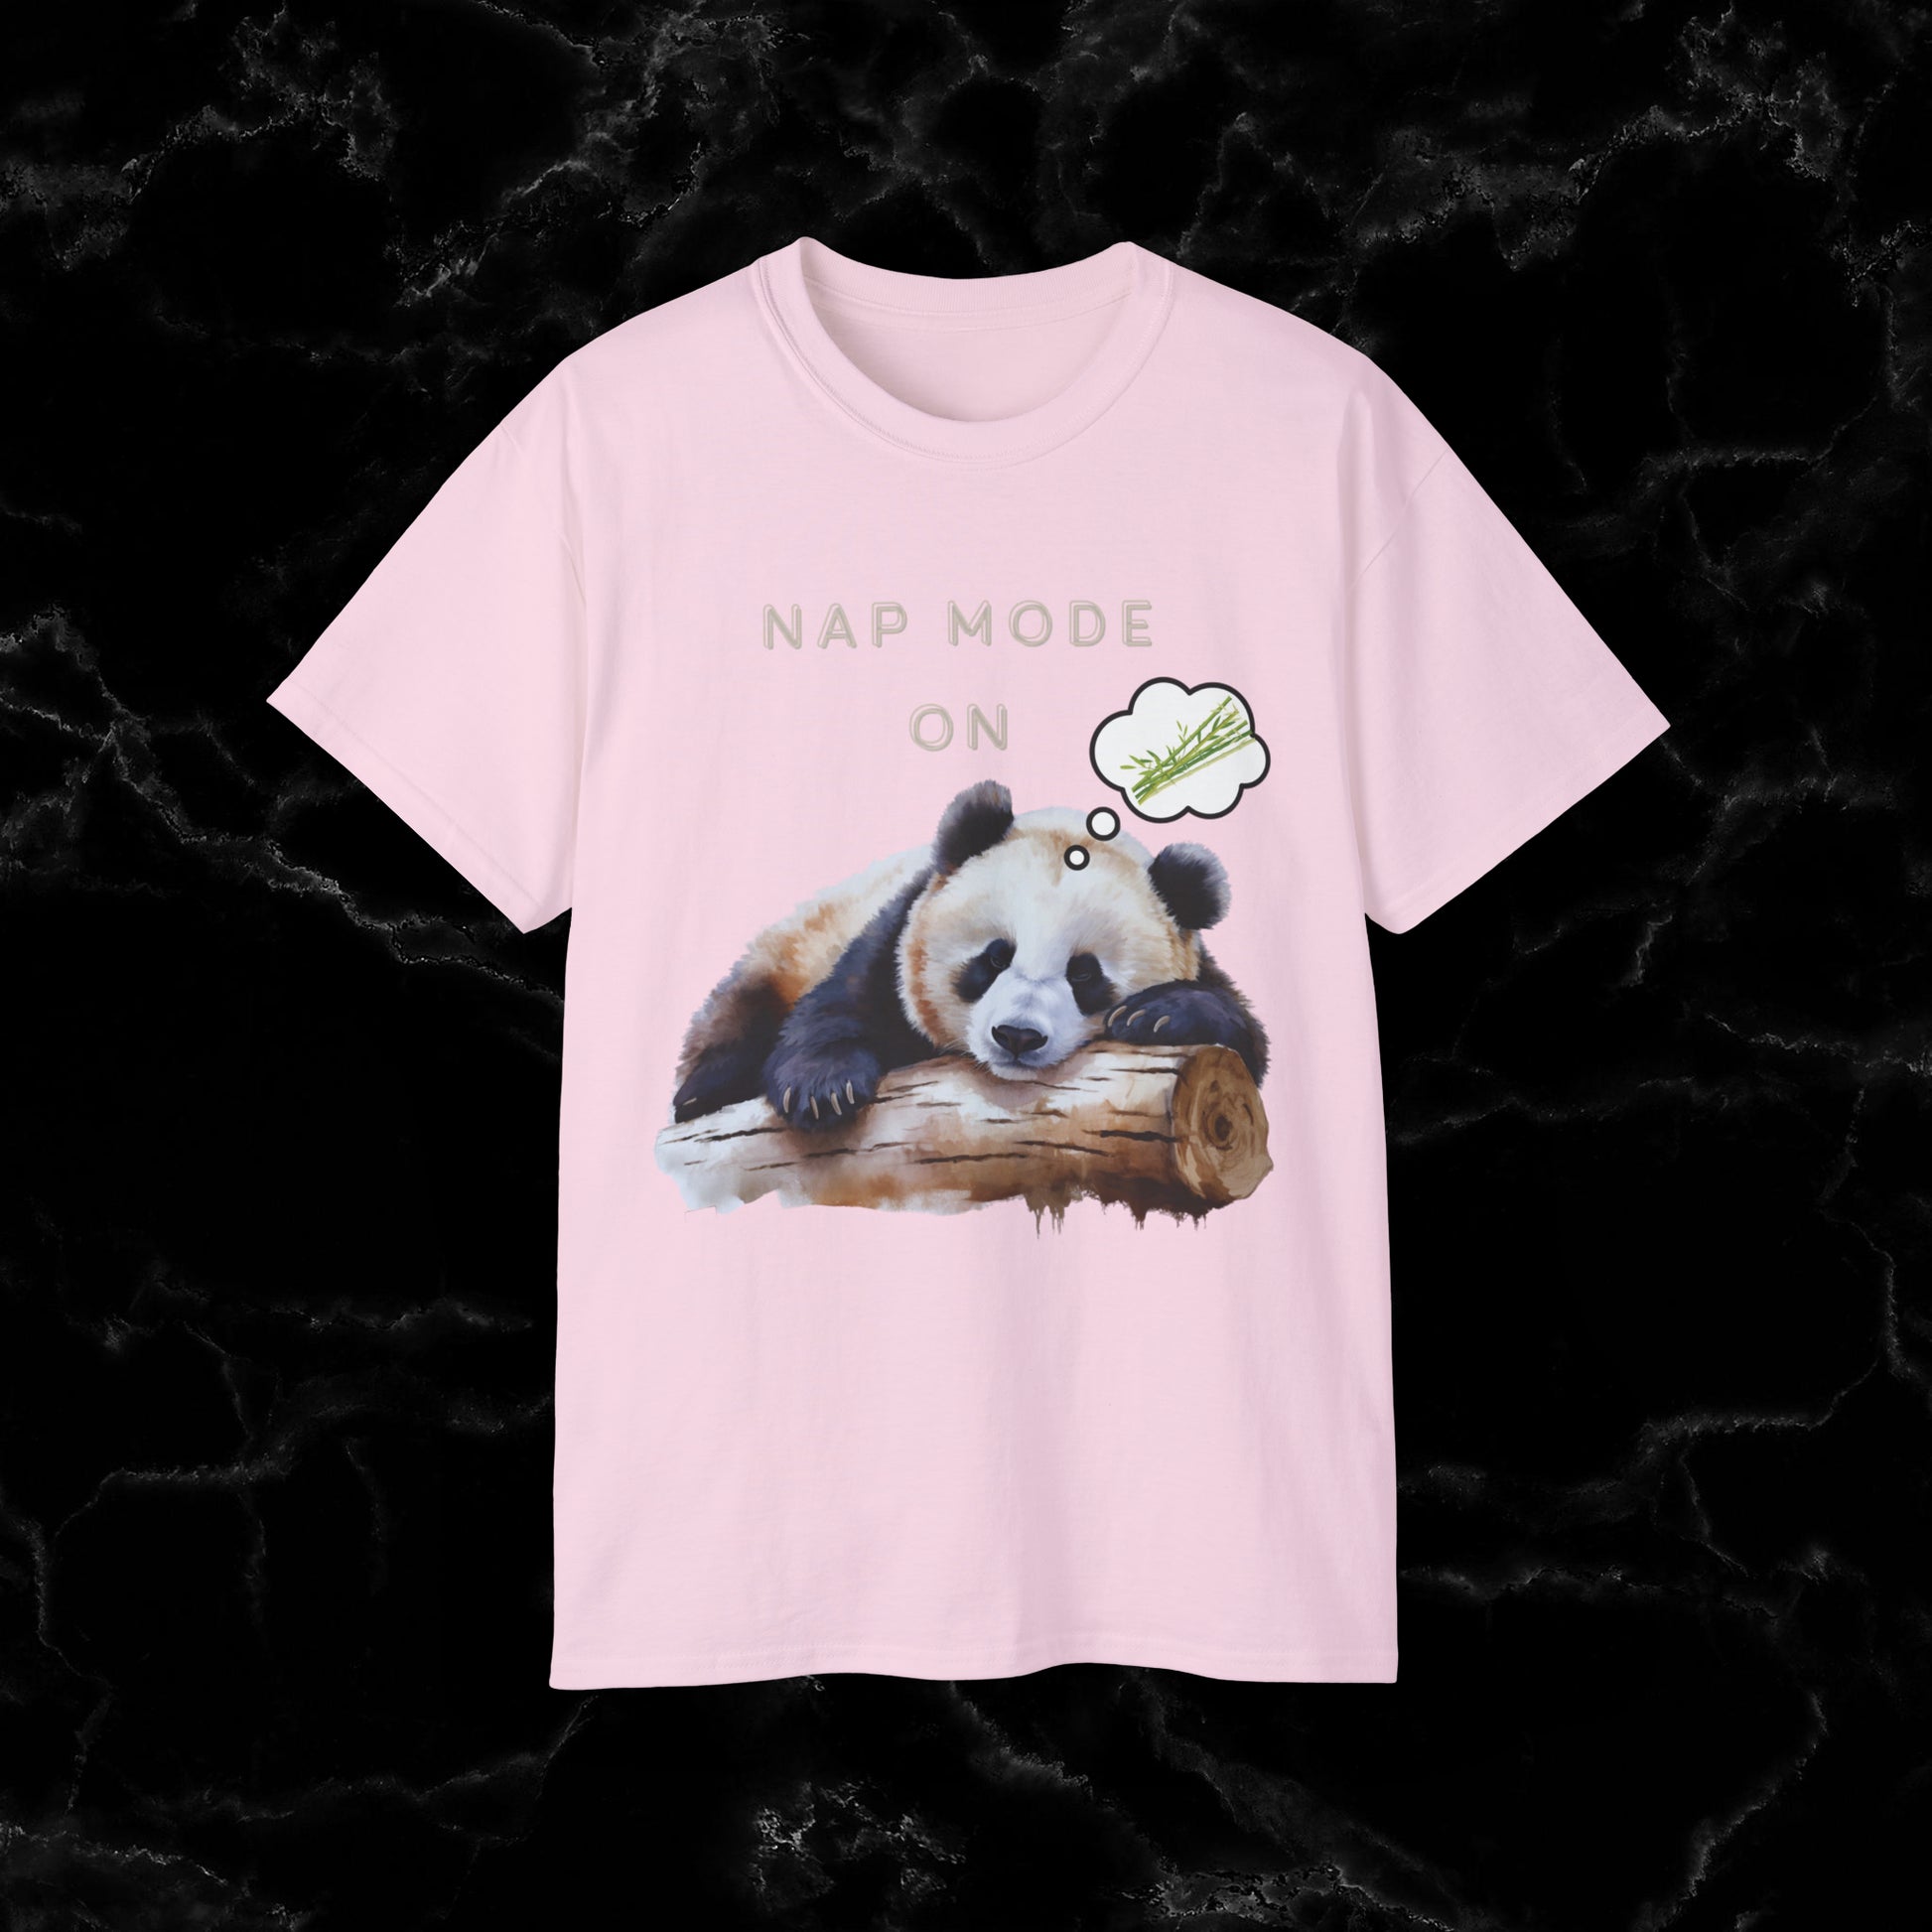 Nap Time Panda Unisex Funny Tee - Hilarious Panda Nap Mode On T-Shirt Light Pink S 